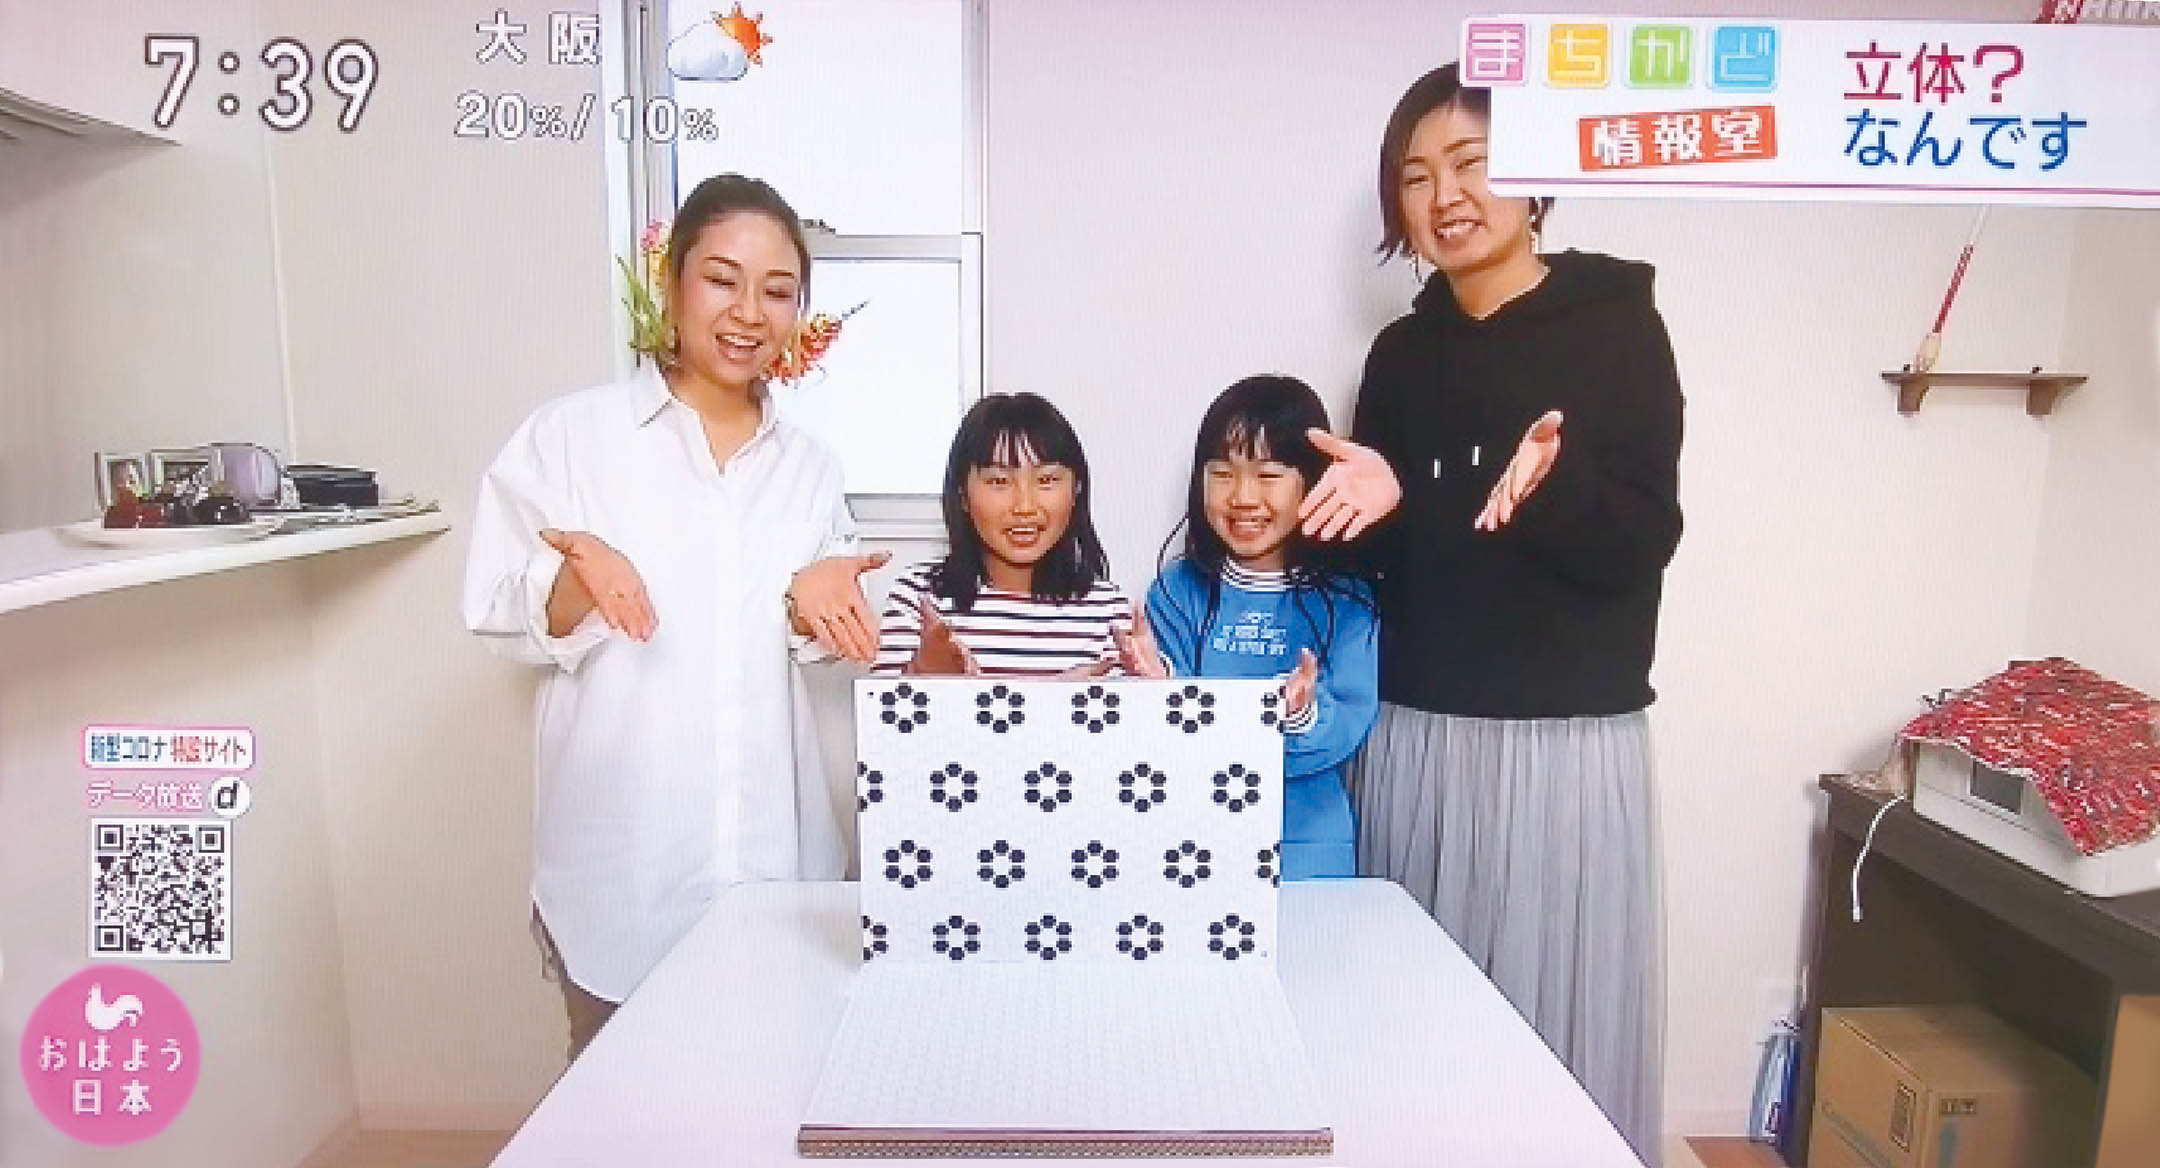 【メディア】NHK「まちかど情報室」で、テーブルフォトブースが紹介されました。